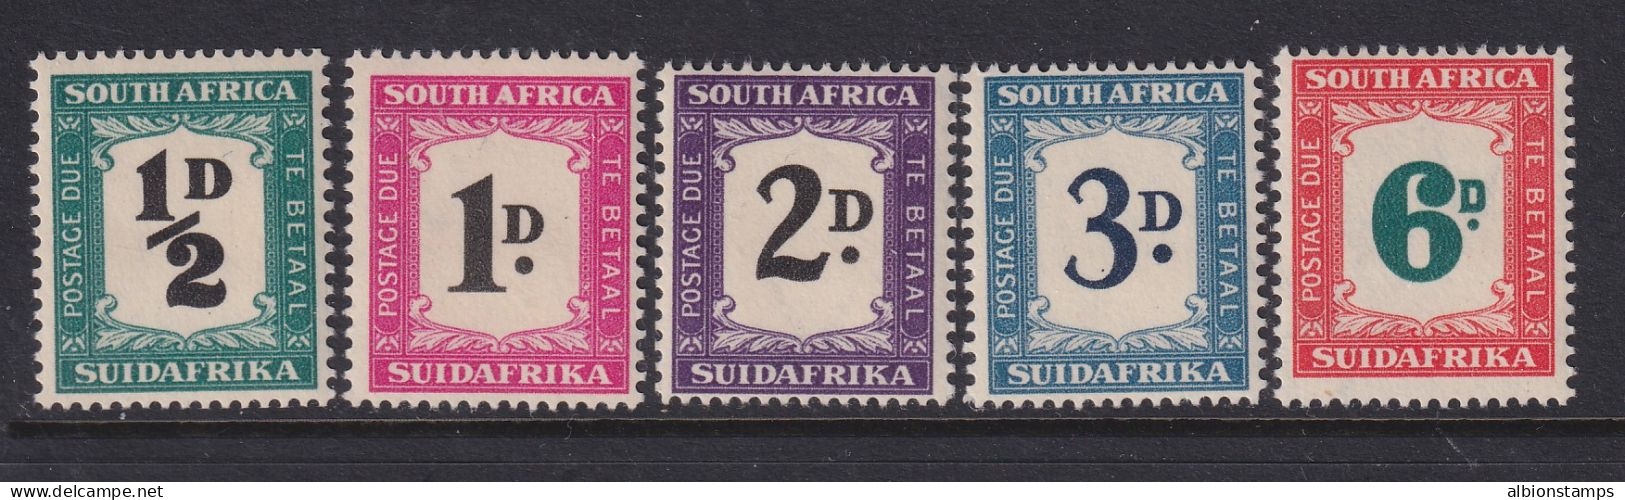 South Africa, Scott J34-J38 (SG D34-D38), MNH - Timbres-taxe